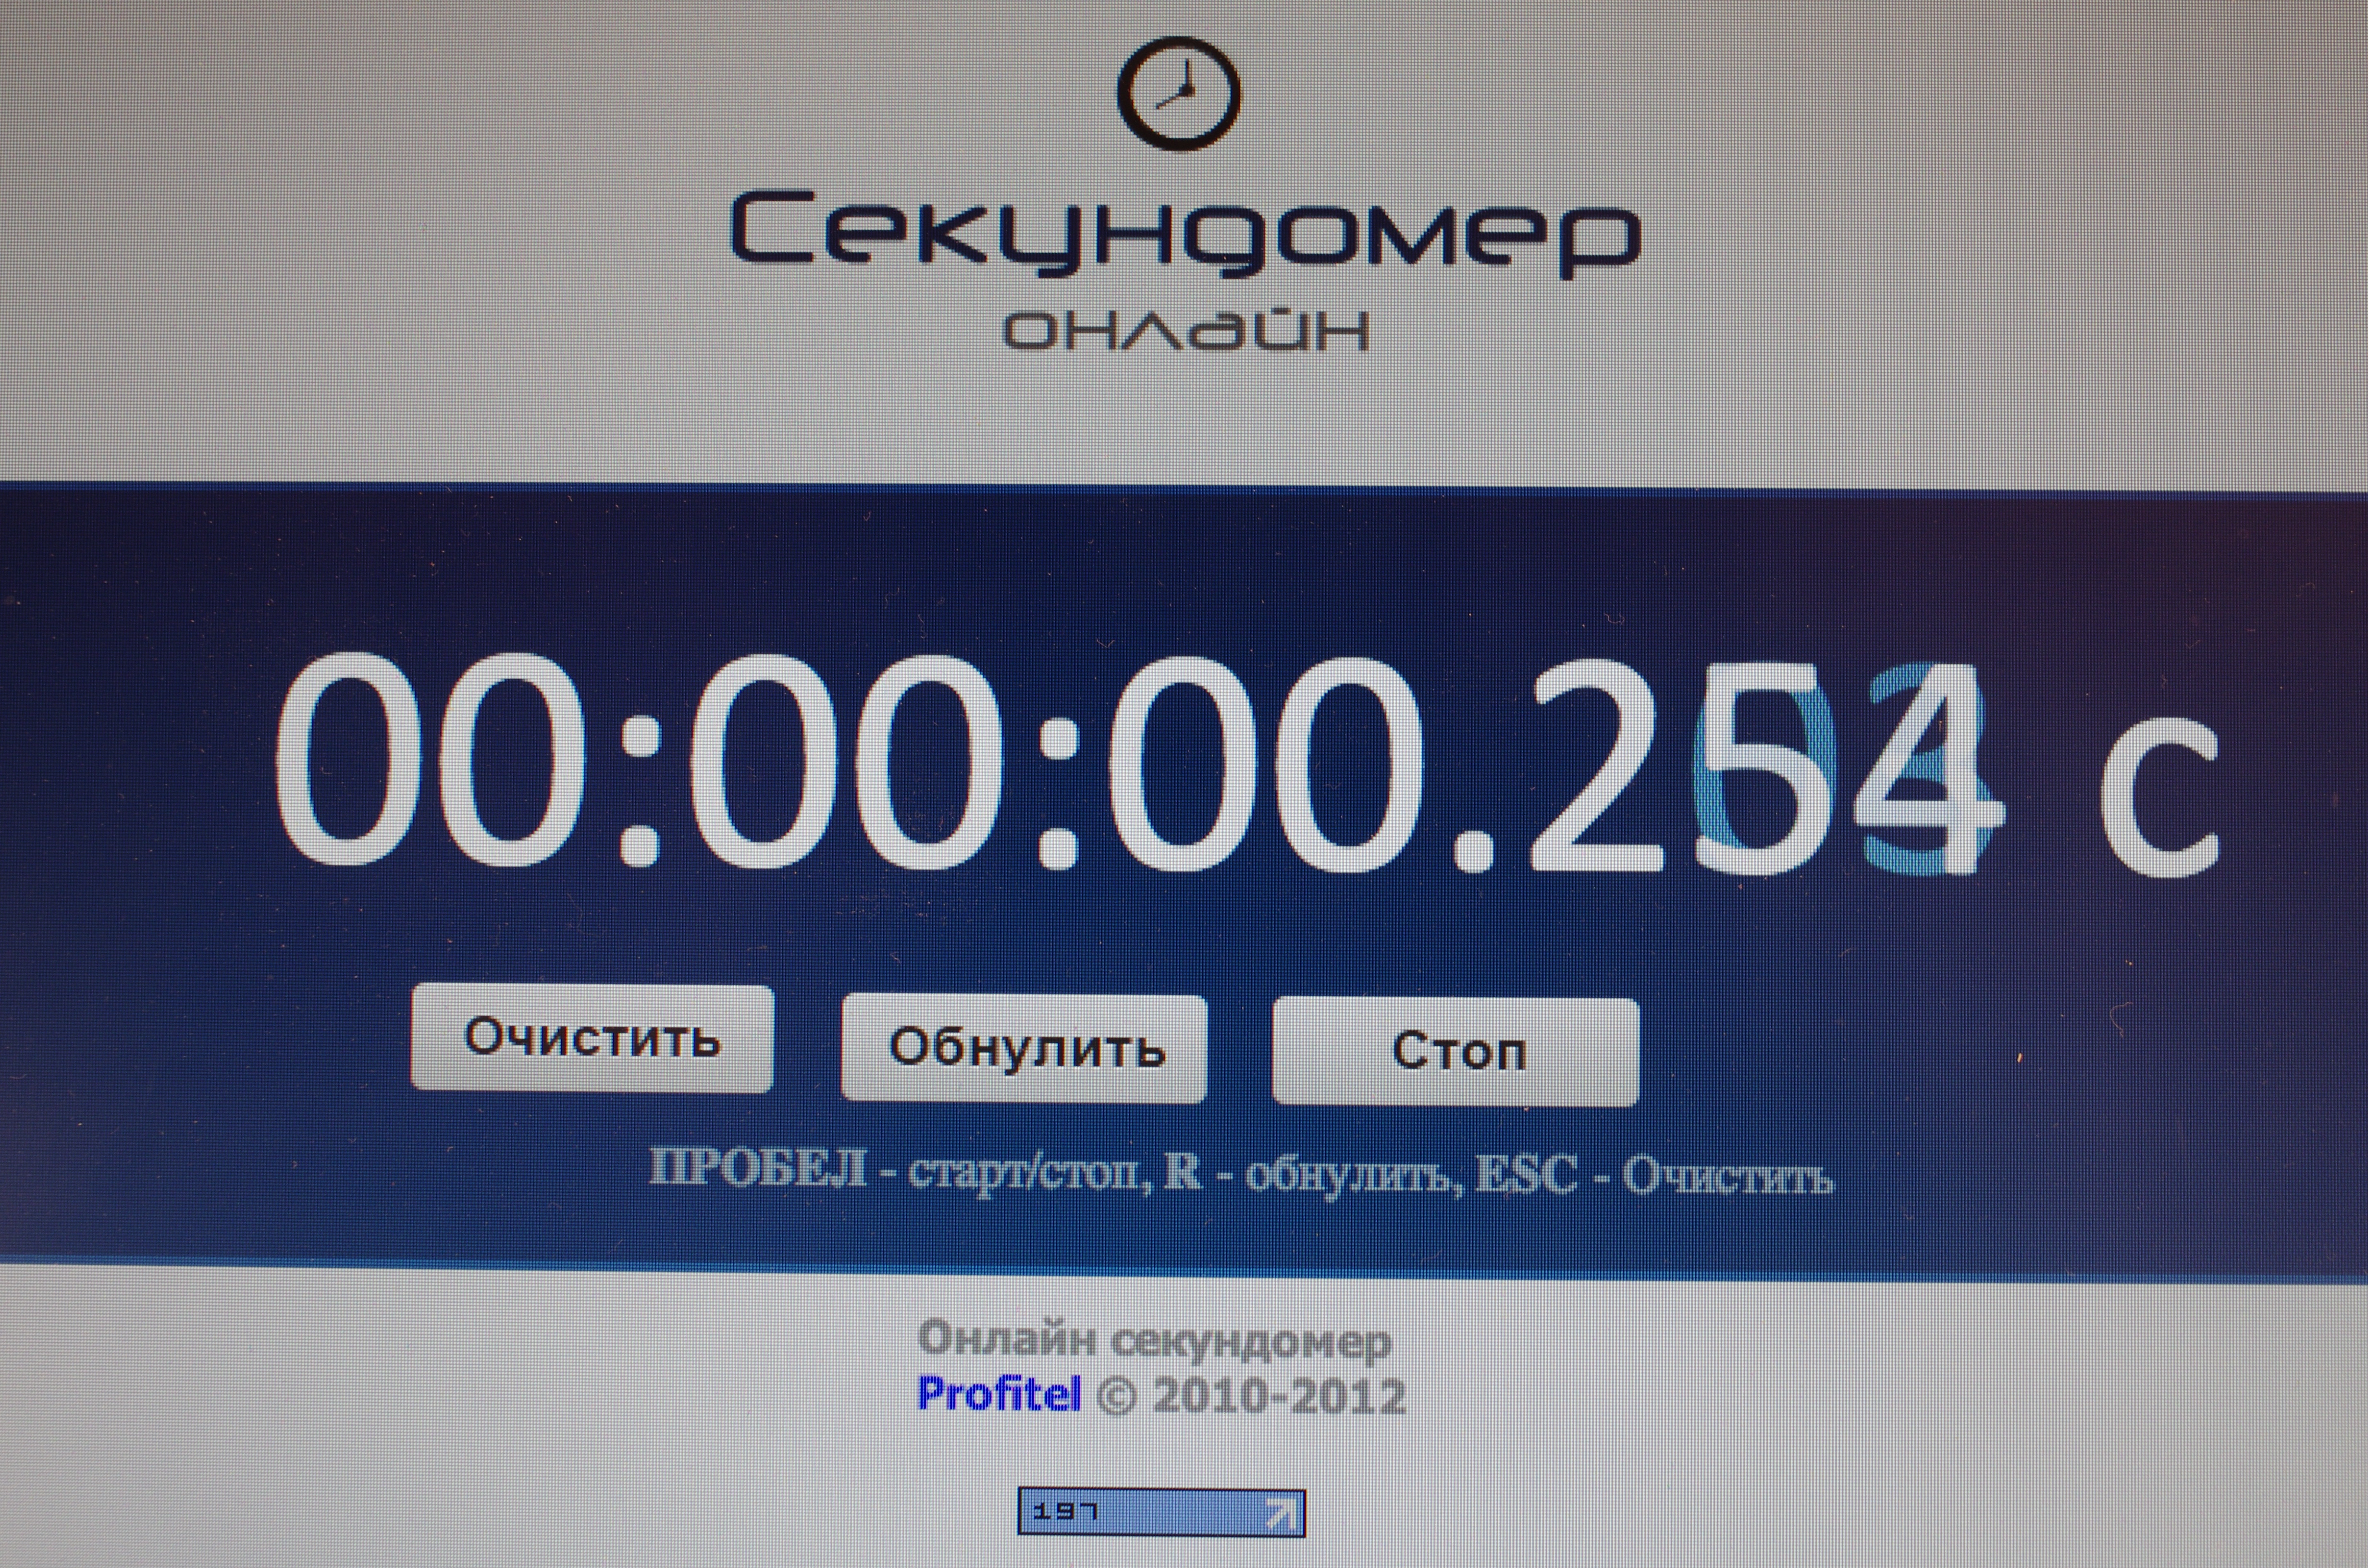 http://assets.prophotos.ru/data/articles/0001/4806/69630/original.jpg